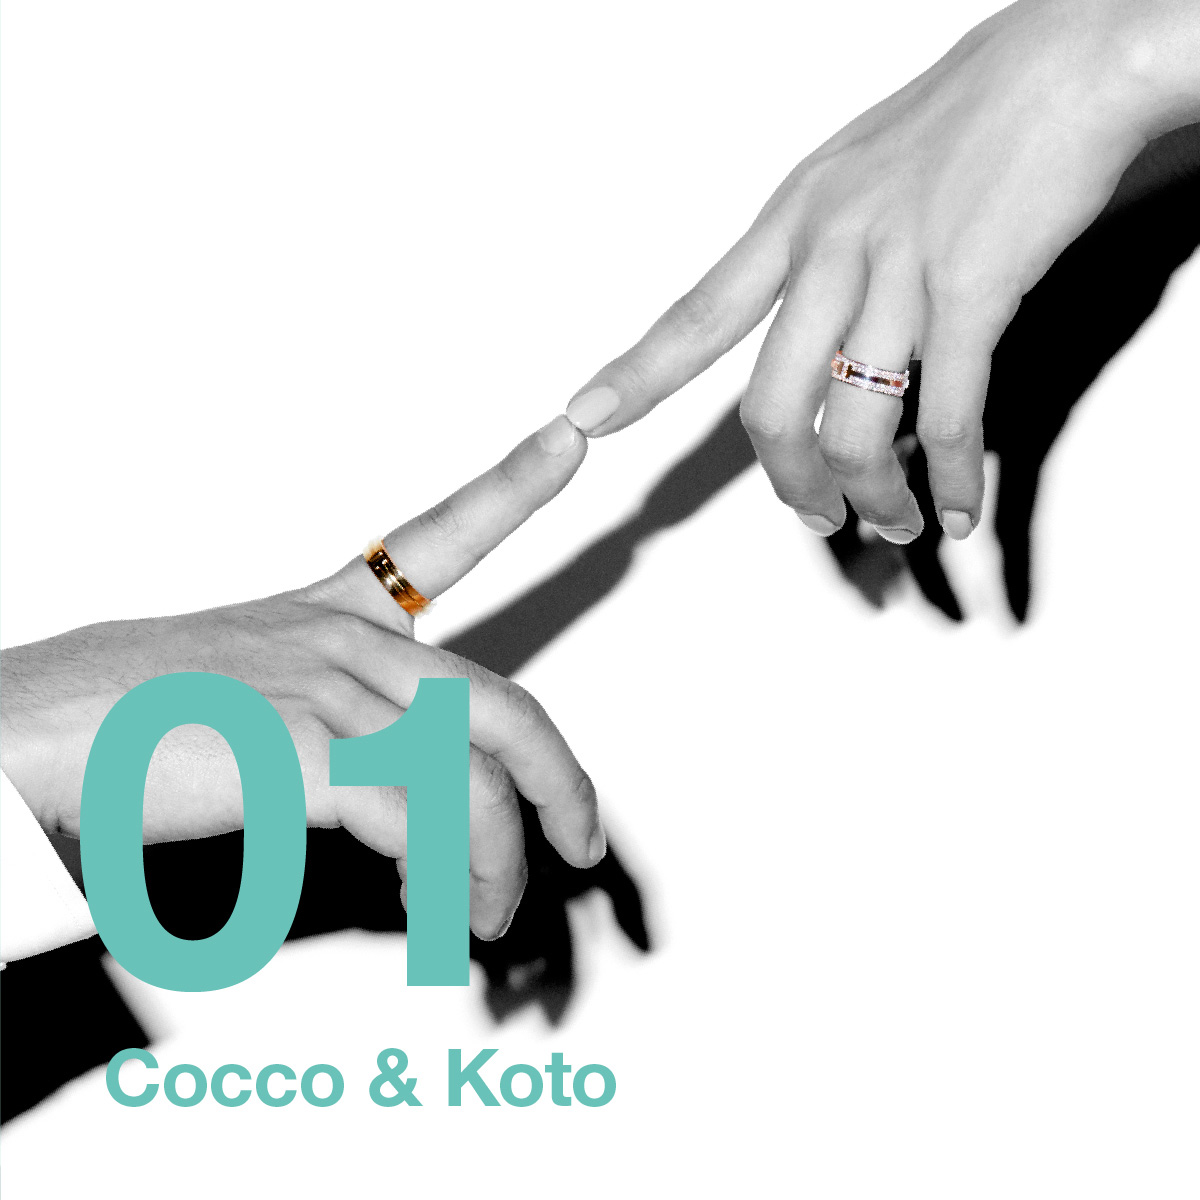 Cocco & Cocco’s Son